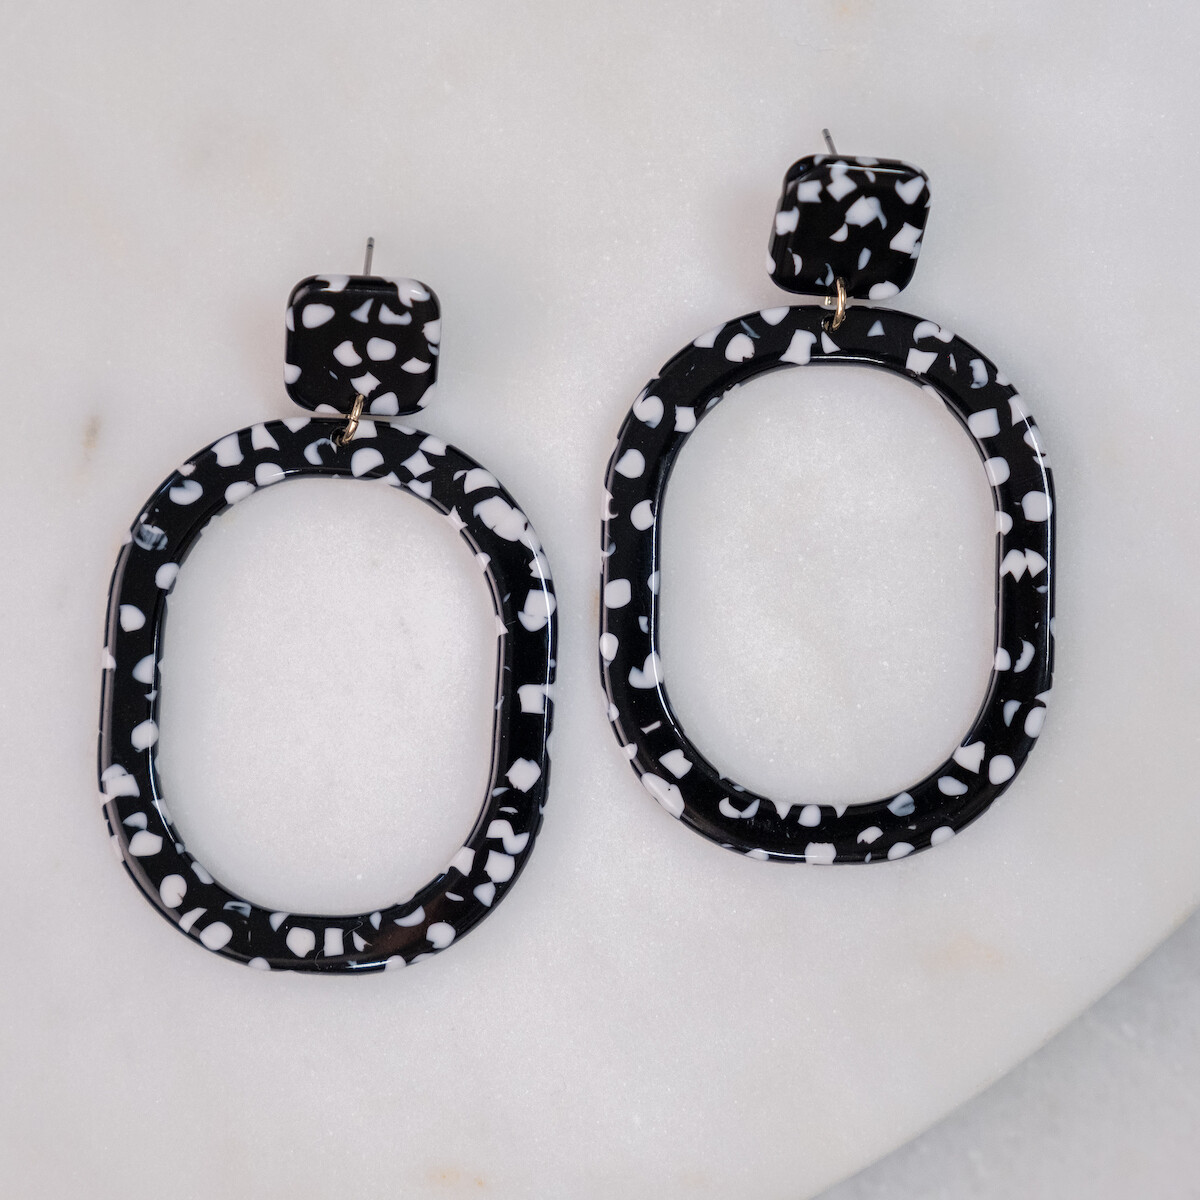 Dublin Acetate Earrings in Black/White